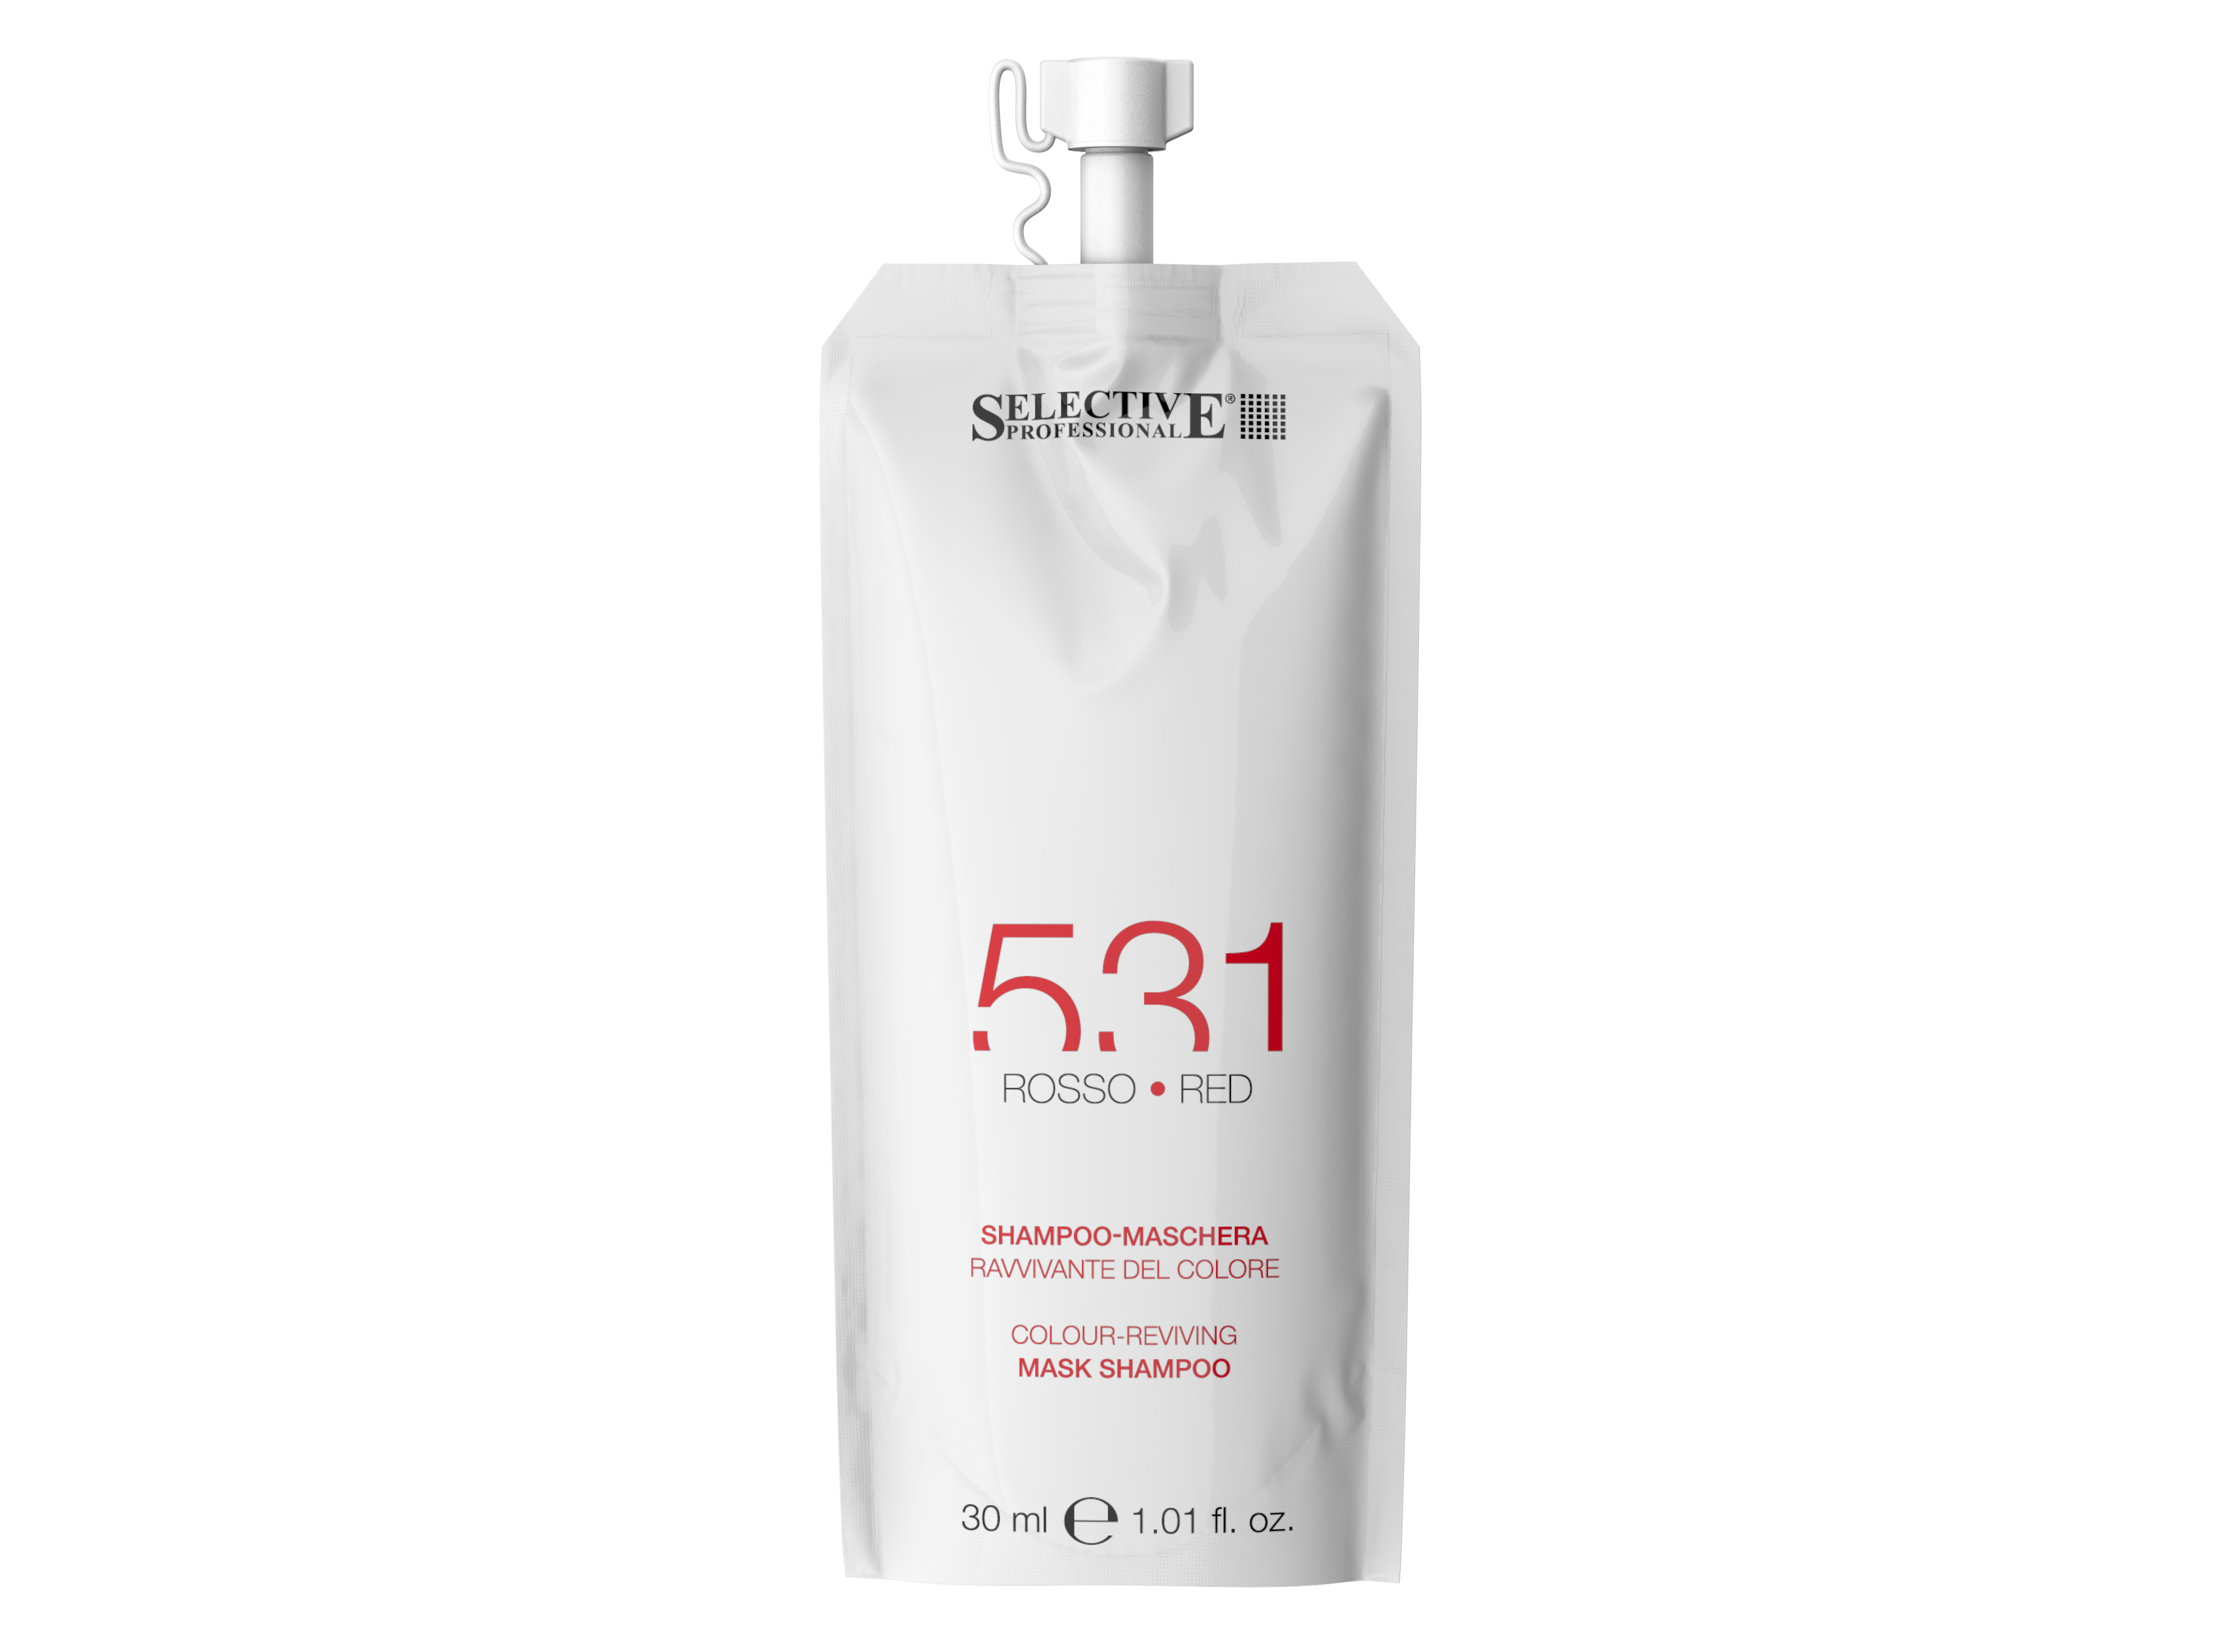 Шампуни для волос:  SELECTIVE PROFESSIONAL -  Оттеночный шампунь - маска 531 для возобновления цвета волос, Красный (30 мл)